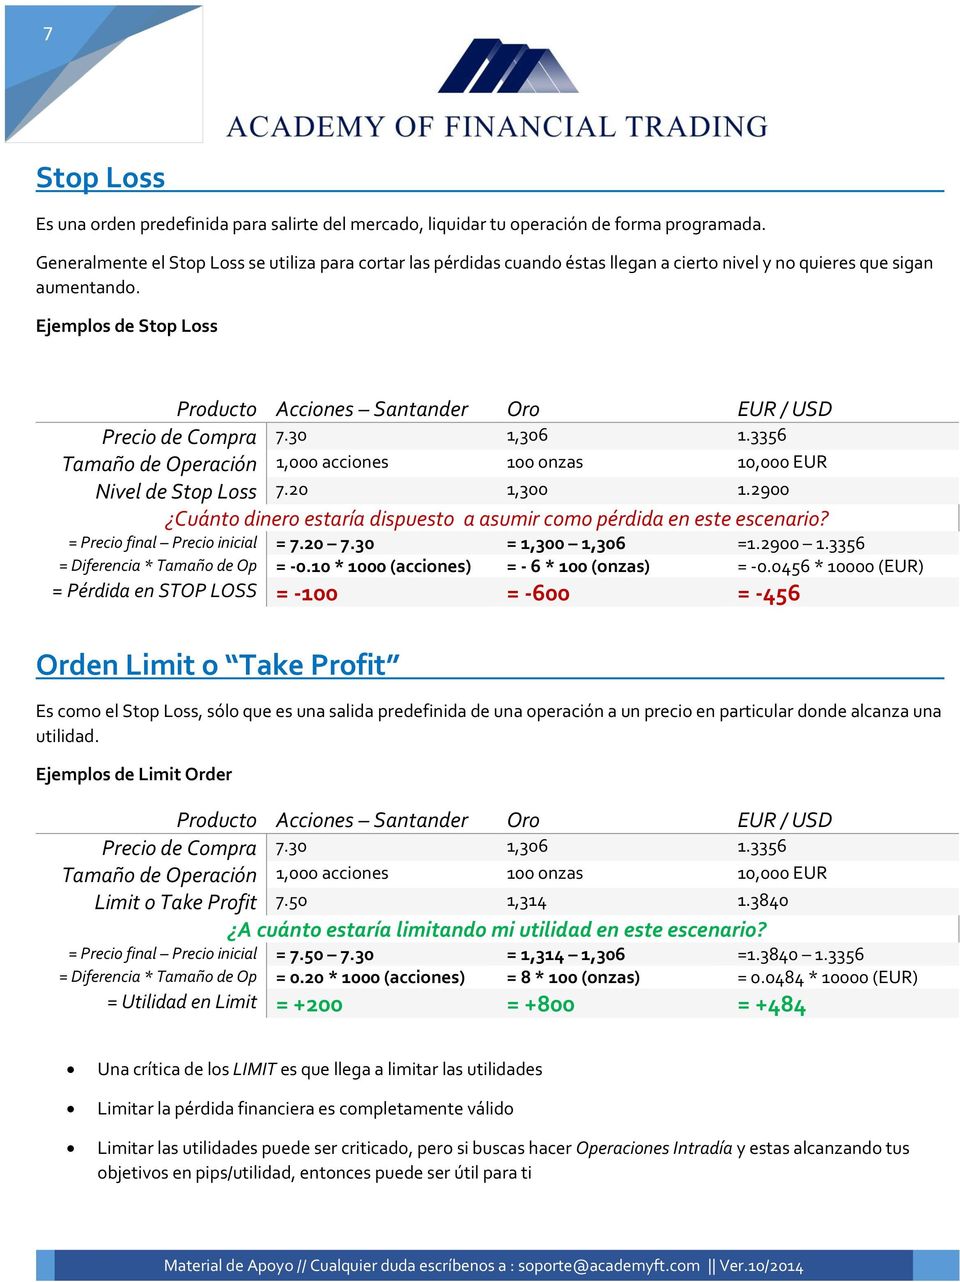 Ejemplos de Stop Loss Producto Acciones Santander Oro EUR / USD Precio de Compra 7.30 1,306 1.3356 Tamaño de Operación 1,000 acciones 100 onzas 10,000 EUR Nivel de Stop Loss 7.20 1,300 1.